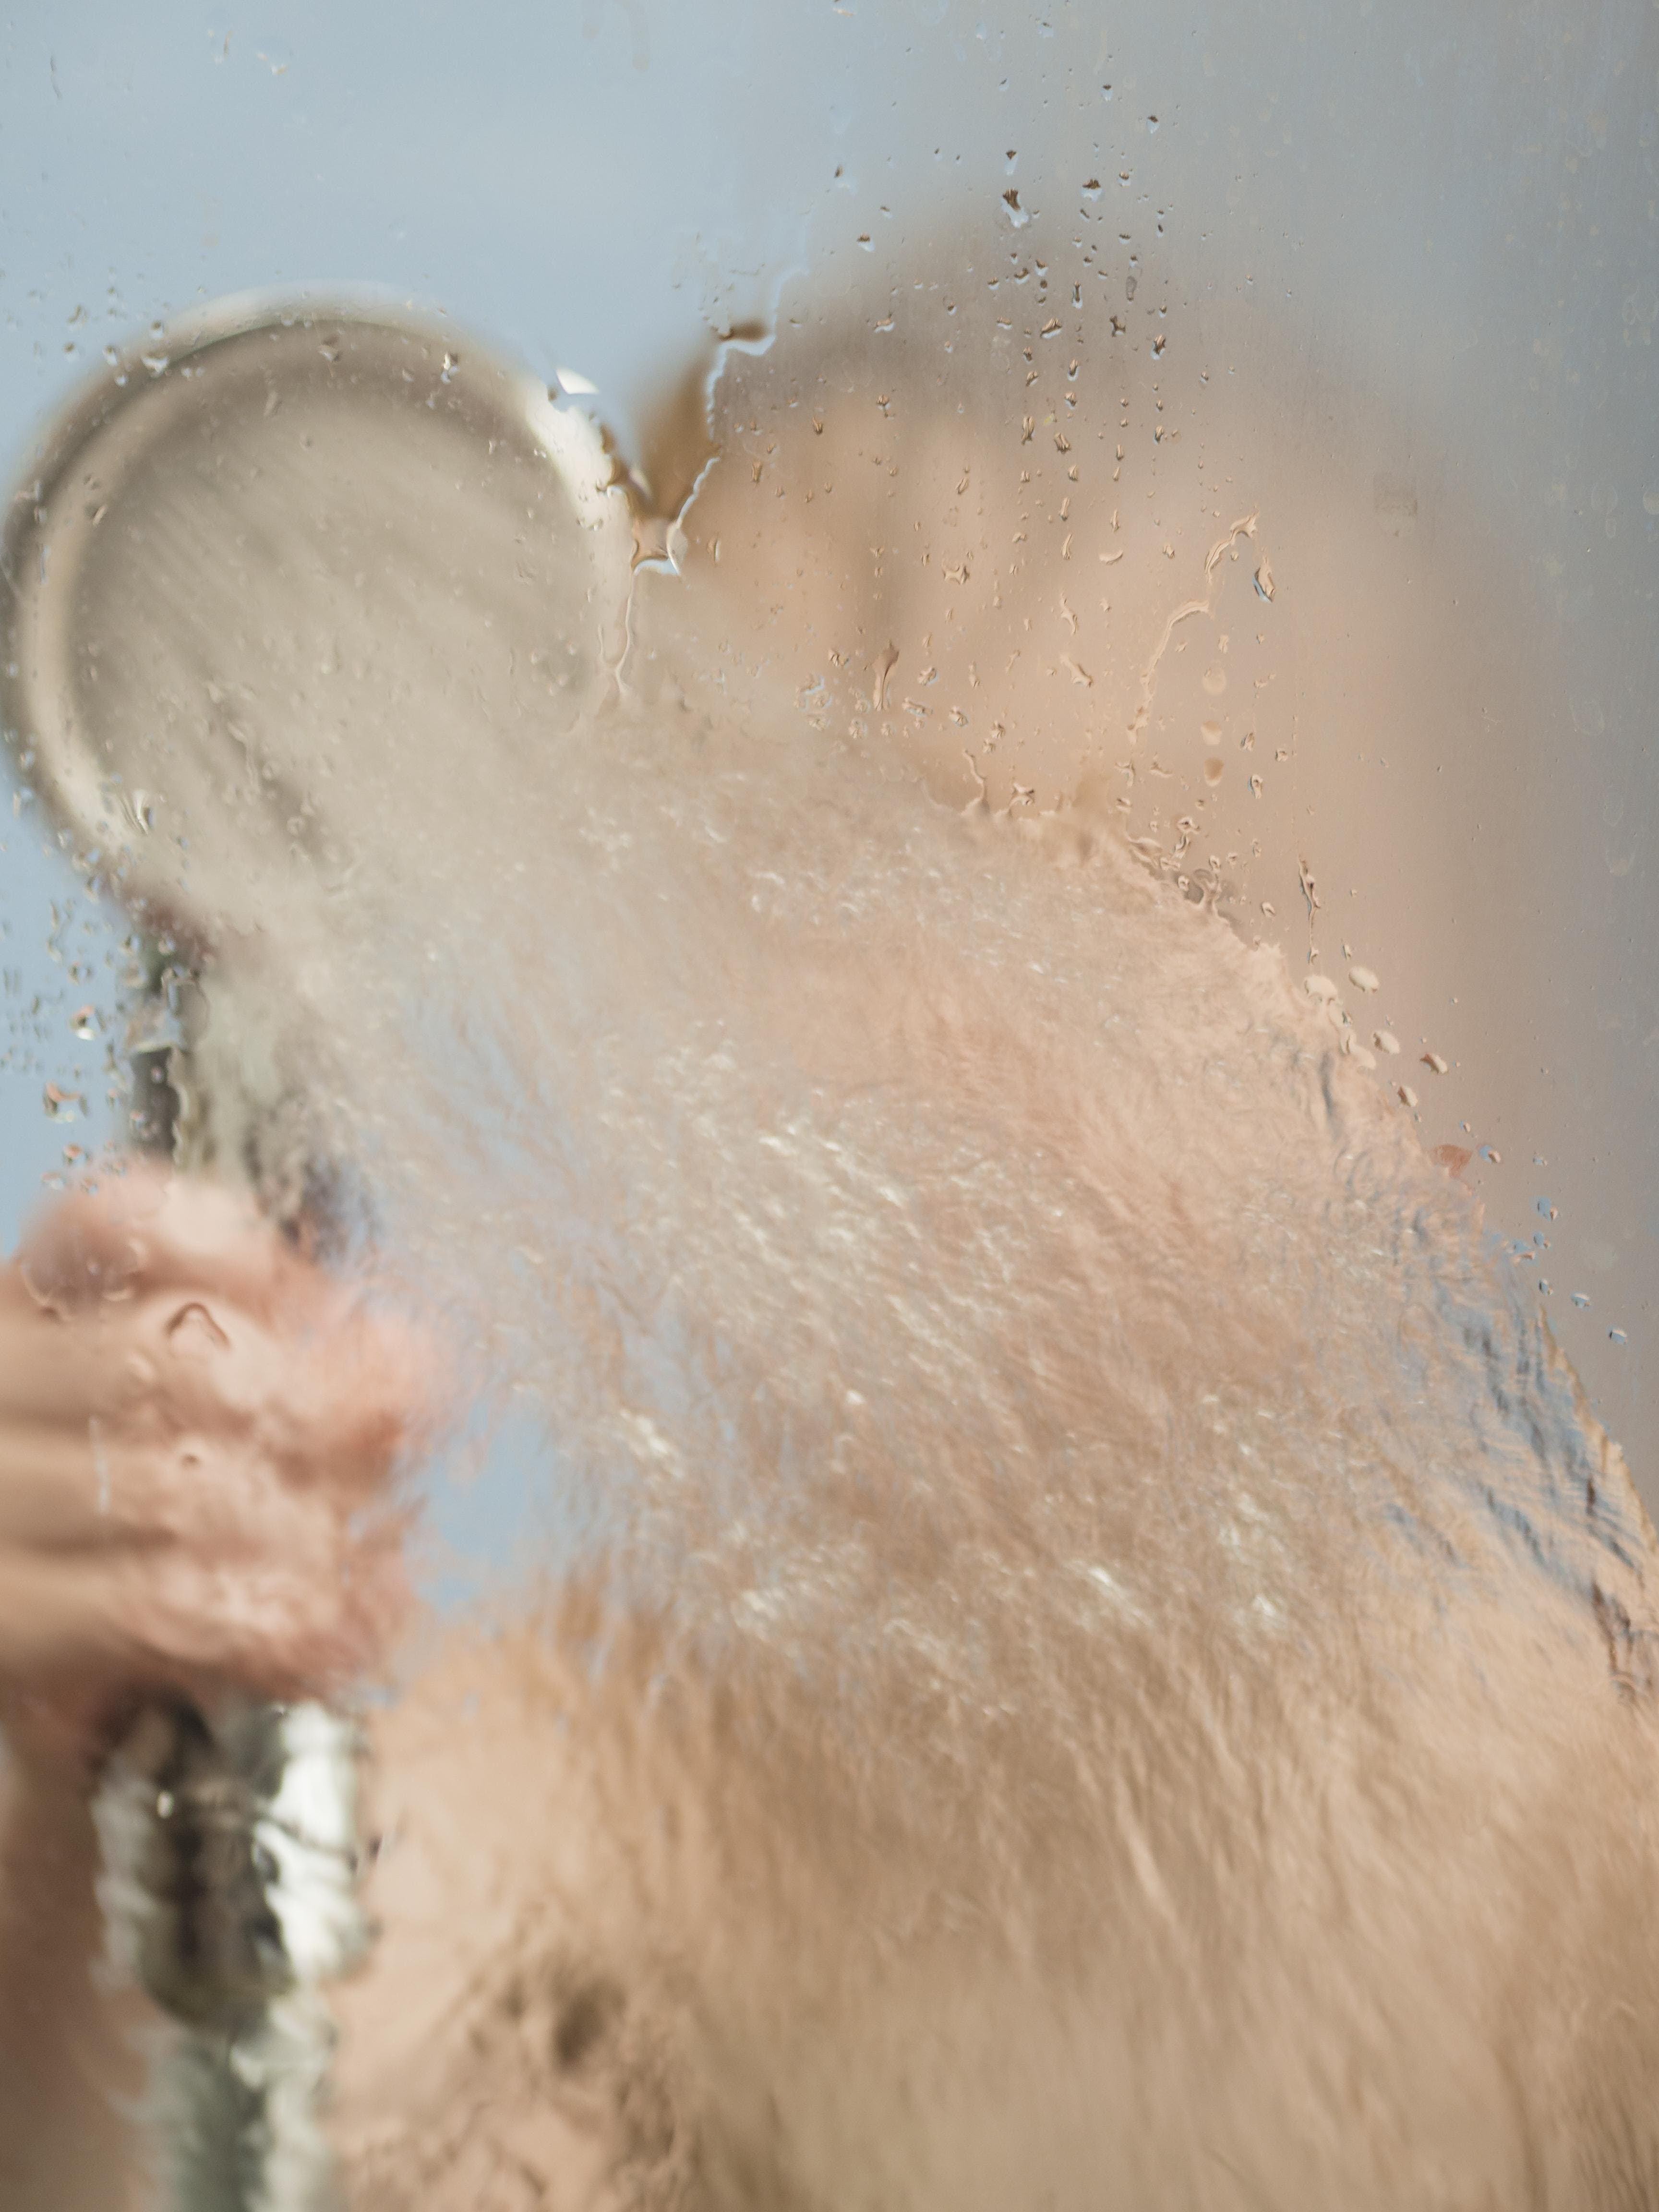 Prevenir a condensação nos ambientes ajuda a evitar o aparecimento de mofo, principalmente em área molhadas, como banheiro e cozinha | Foto: Divulgação/Freepik